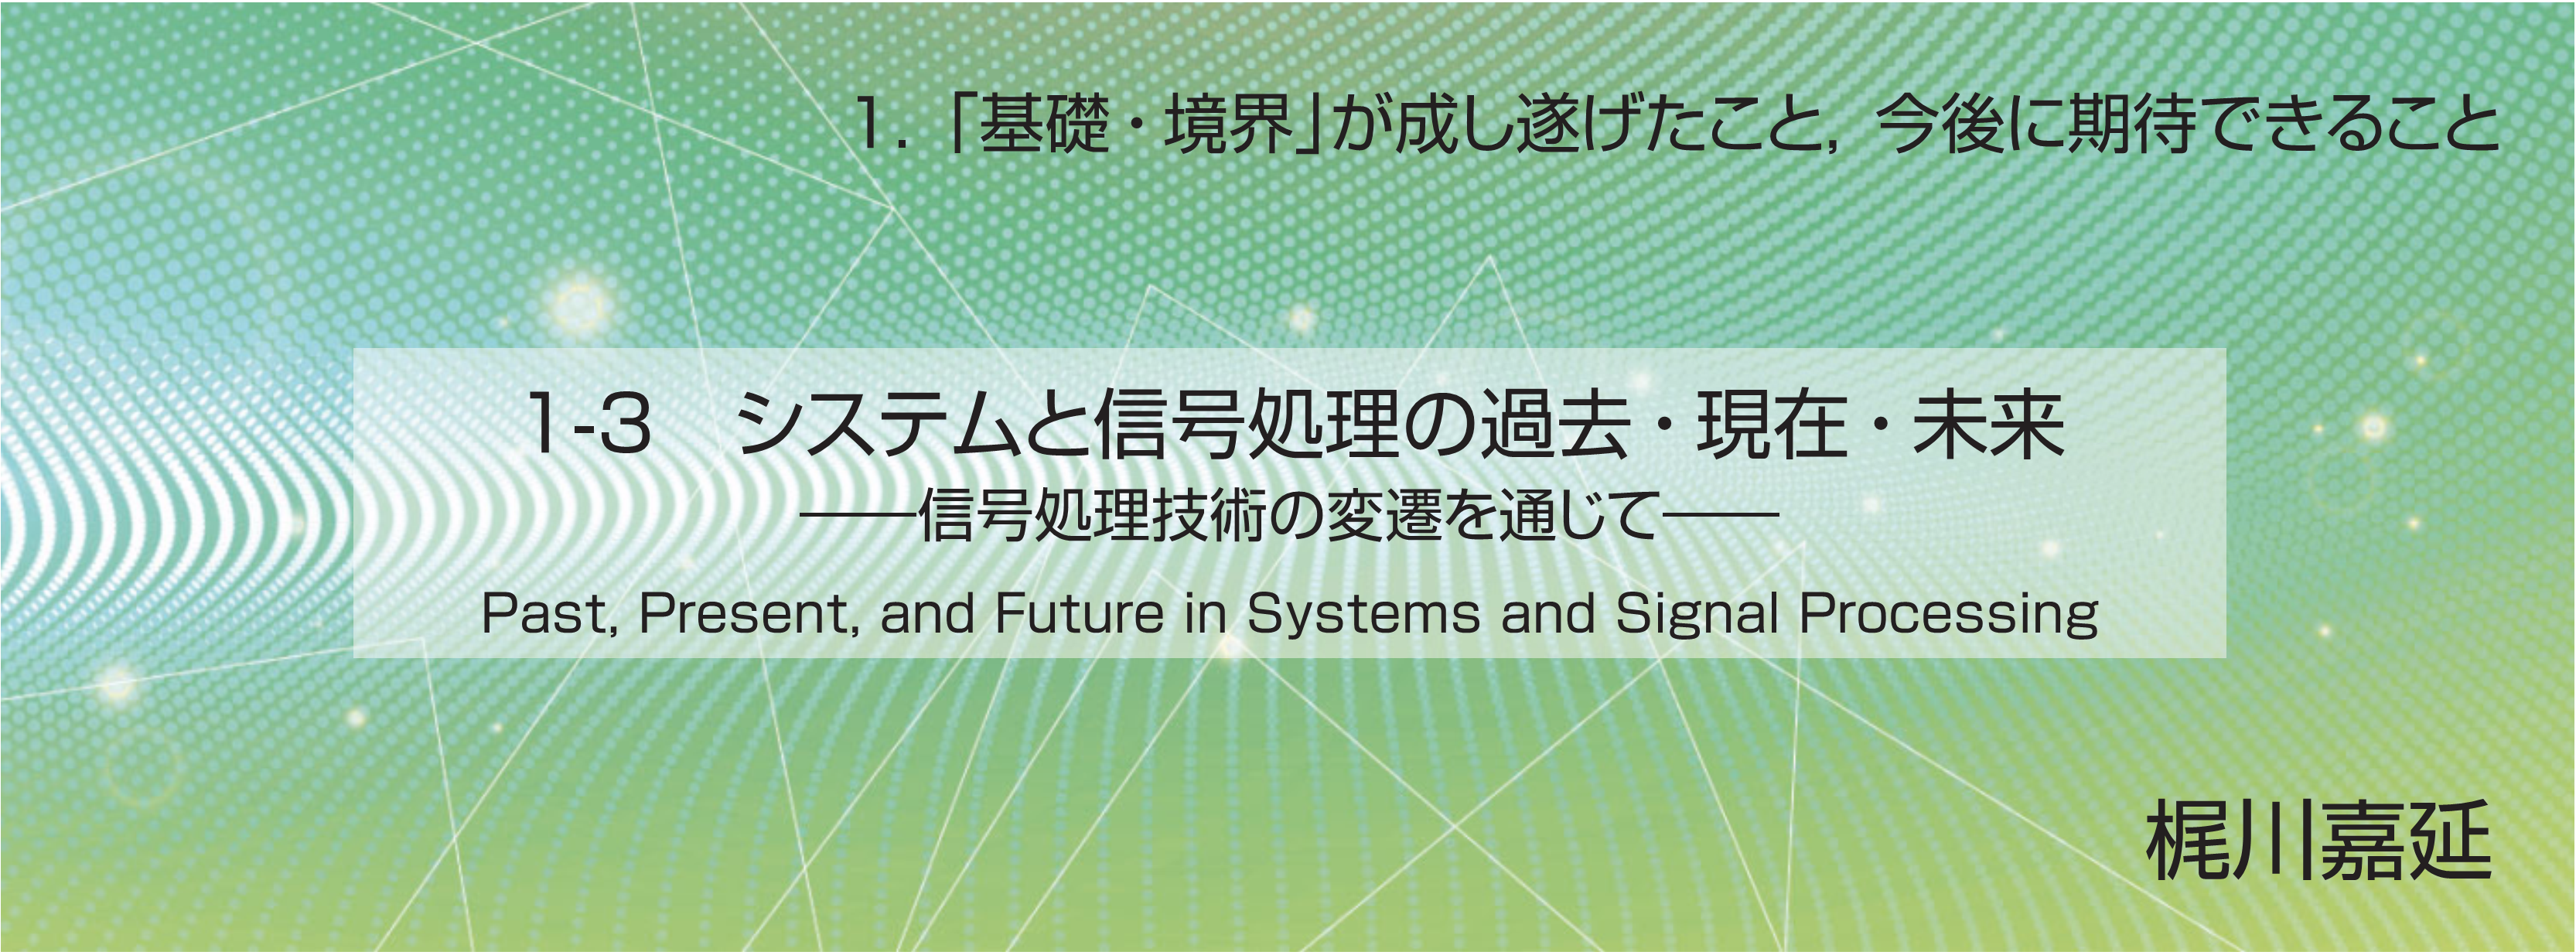 特集 1-3 システムと信号処理の過去・現在・未来――信号処理技術の変遷を通じて――